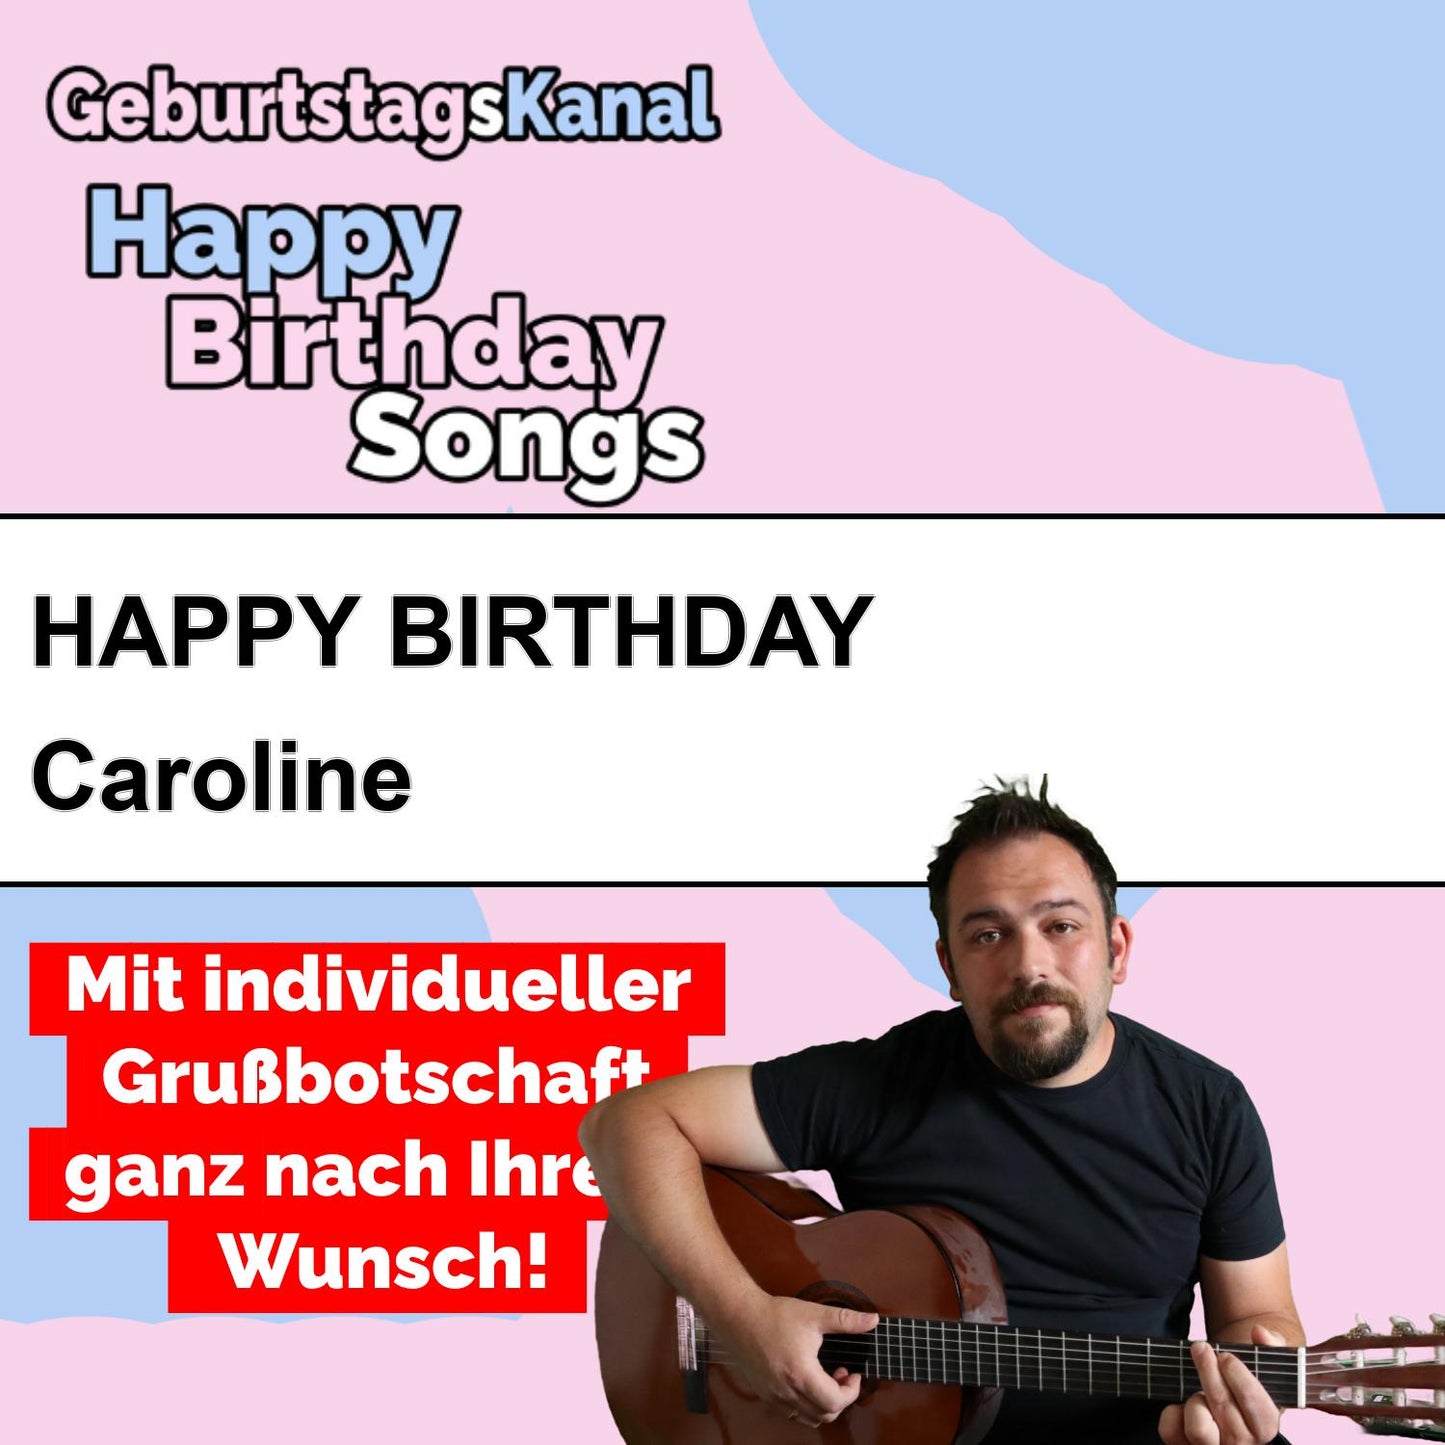 Produktbild Happy Birthday to you Caroline mit Wunschgrußbotschaft